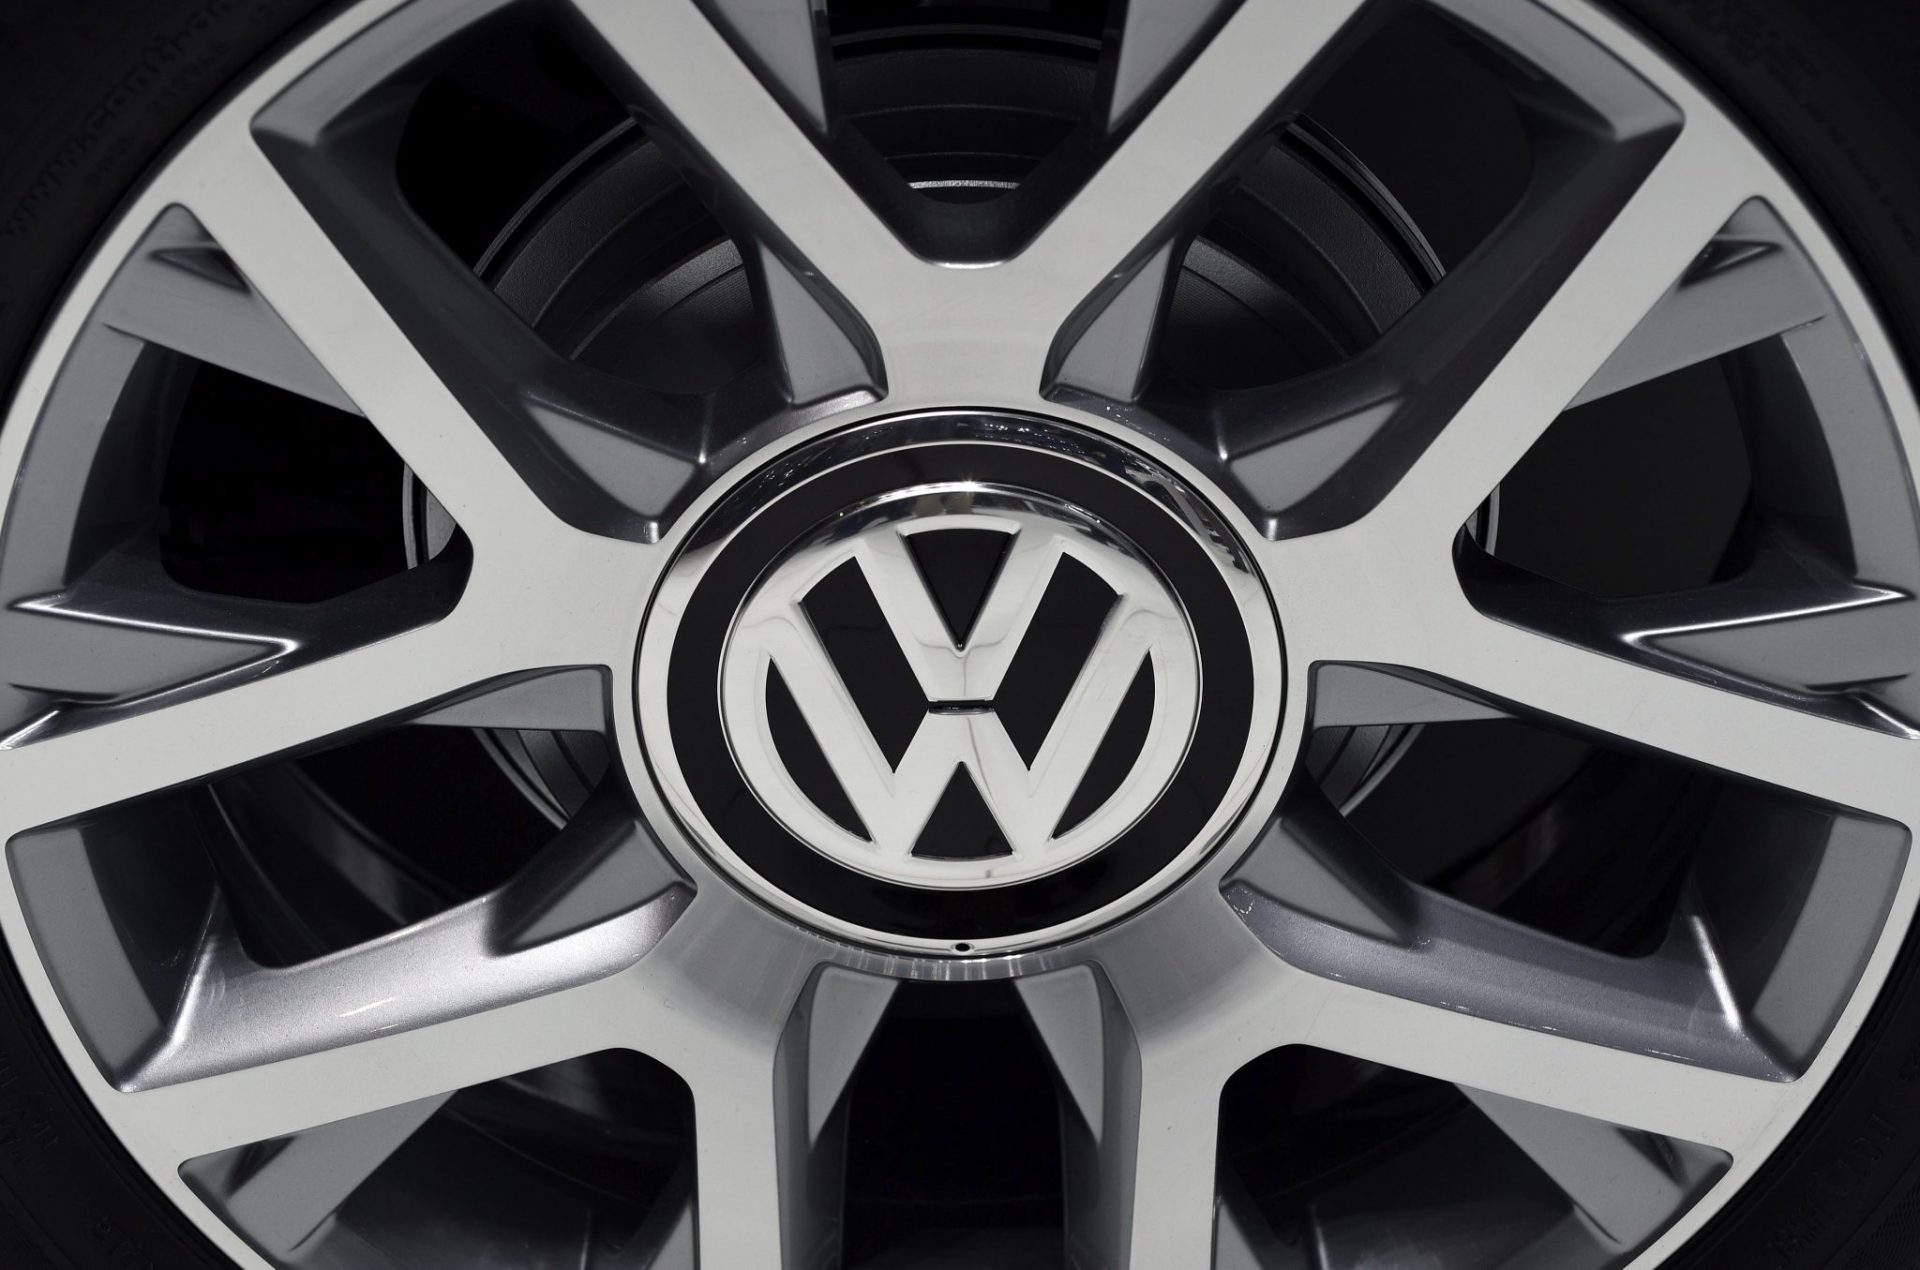 Logotipo de Volkswagen en la llanta de un coche.